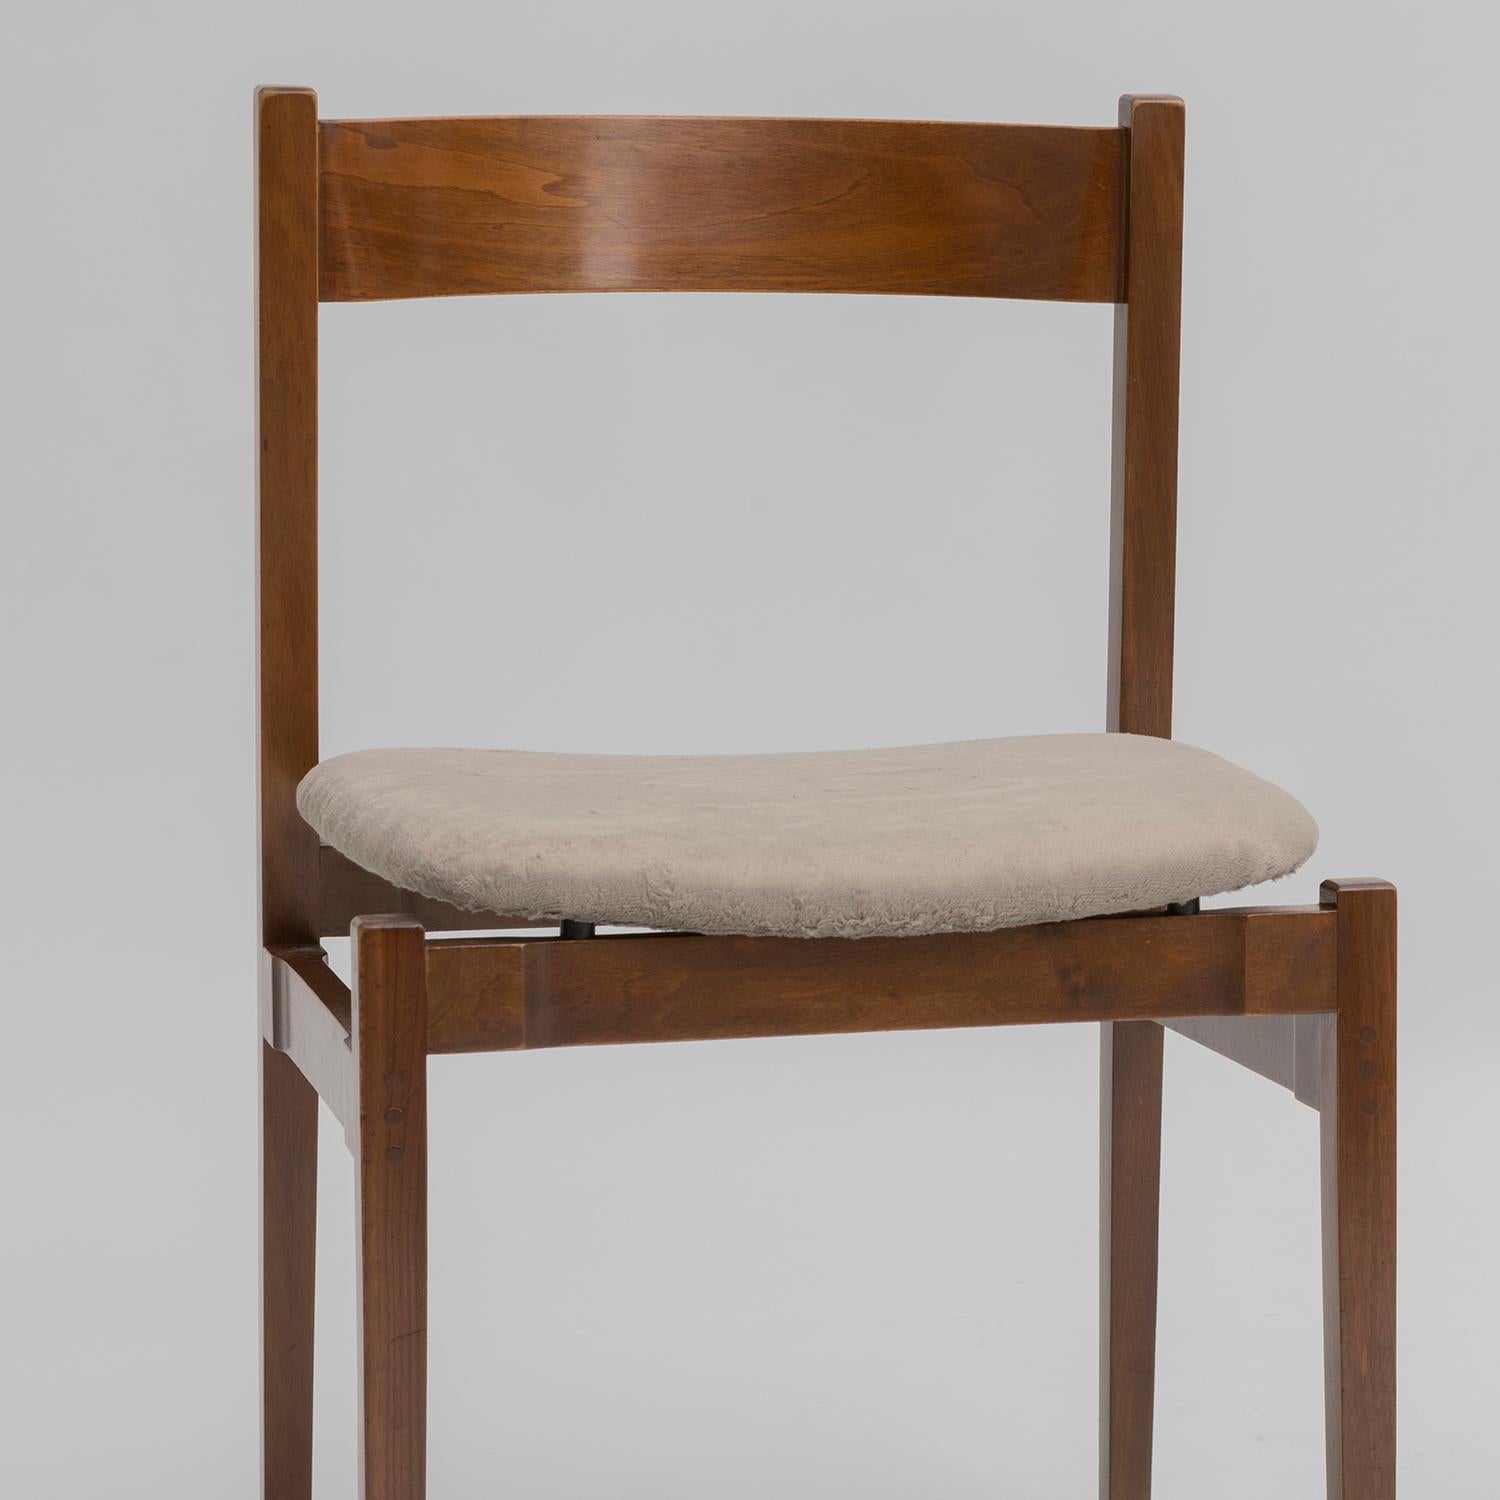 Set di sei sedie in noce modello 1001, disegnate nel 1960 da Gianfranco Frattini e prodotte da Cassina. Recano le etichette originali, le sedute sono state restaurate usando un bel simil velluto  a pelo medio, grigio. La parte legno è stata